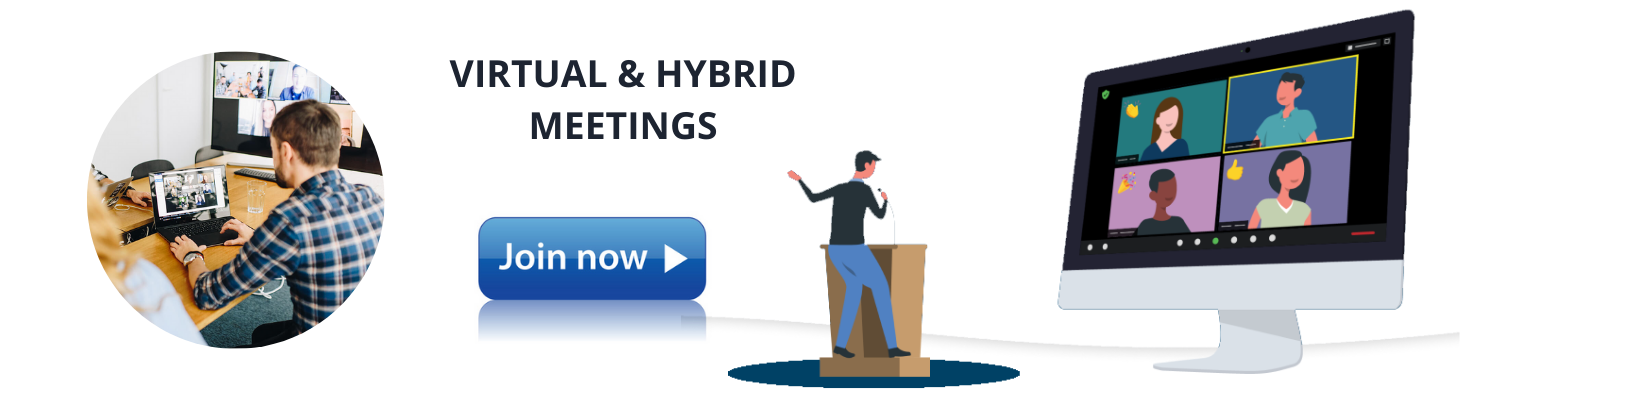 Image: Virtual & Hybrid Meetings